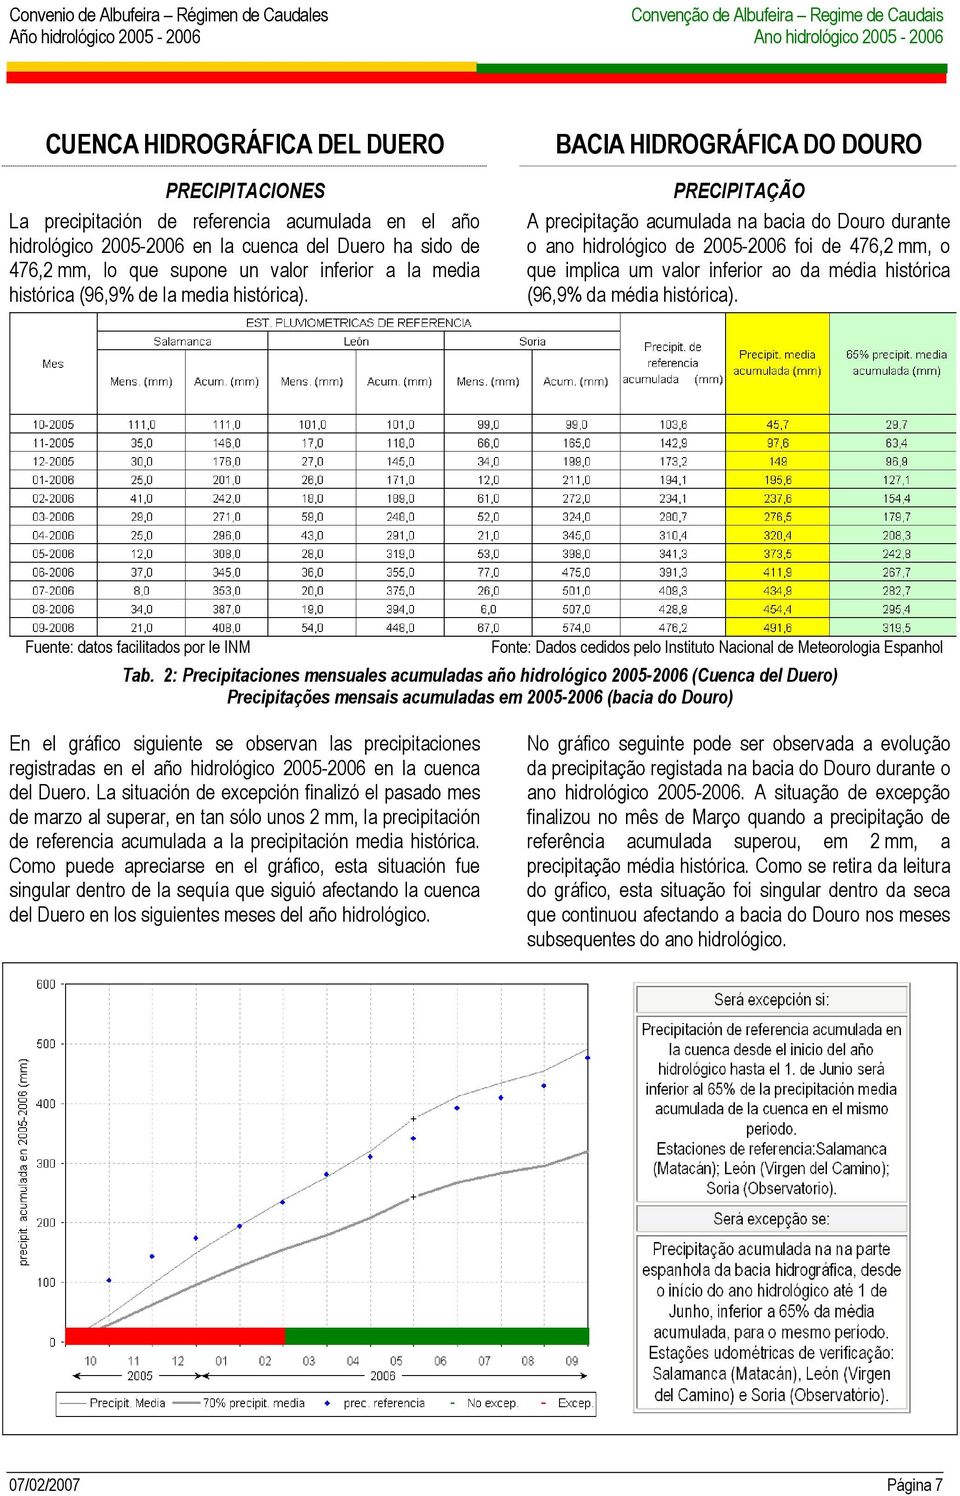 BACIA HIDROGRÁFICA DO DOURO PRECIPITAÇÃO A precipitação acumulada na bacia do Douro durante o ano hidrológico de 2005-2006 foi de 476,2 mm, o que implica um valor inferior ao da média histórica